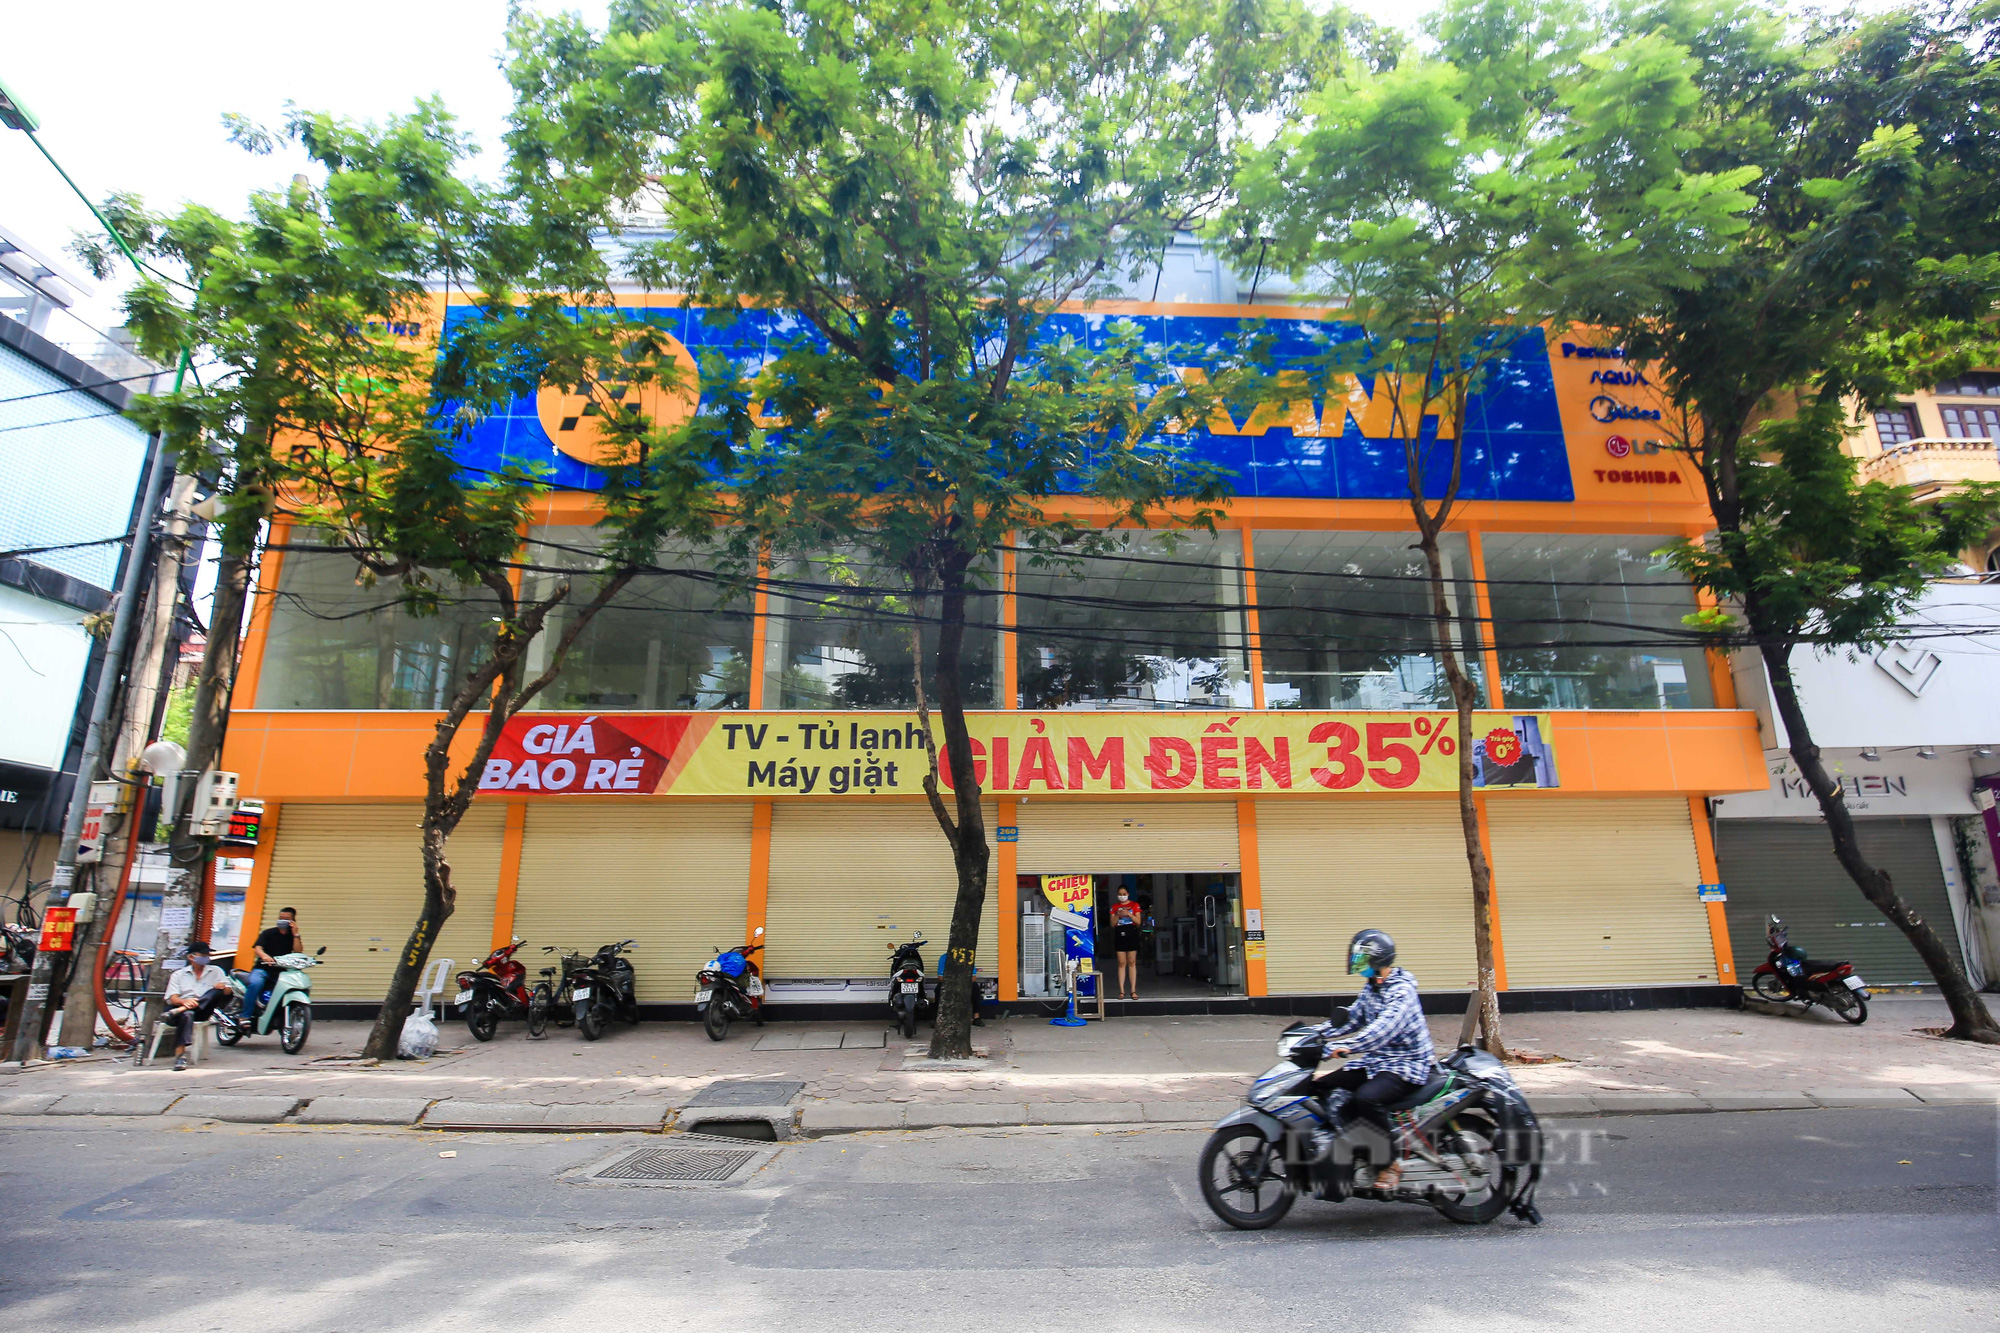 Hà Nội: Các cửa hàng dịch vụ đóng cửa im lìm sau công điện mới - Ảnh 9.